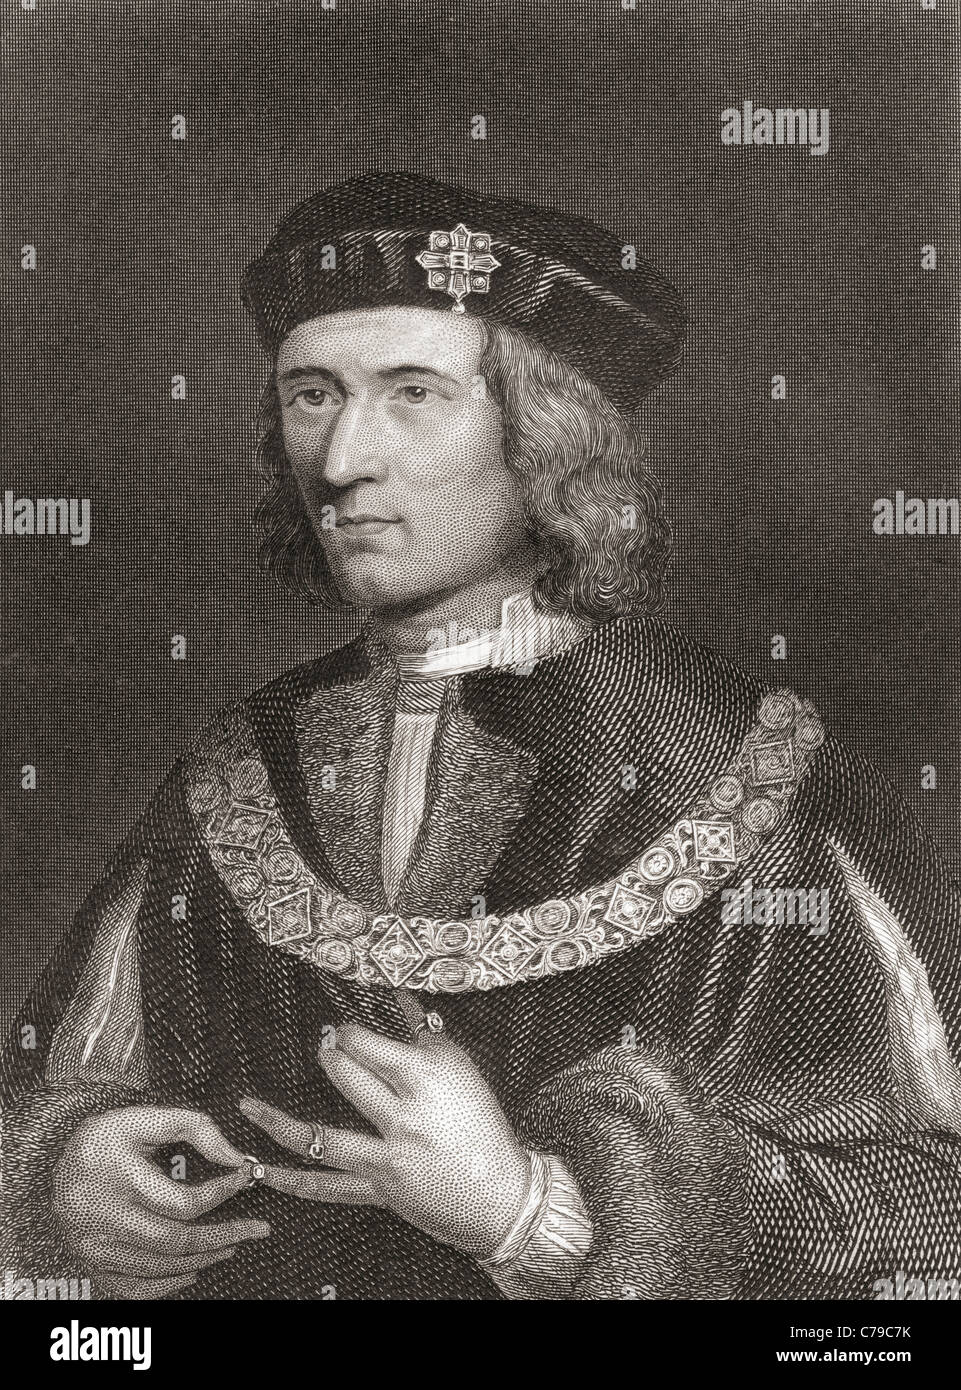 Richard III, 1452 – 1485. King of England. Stock Photo